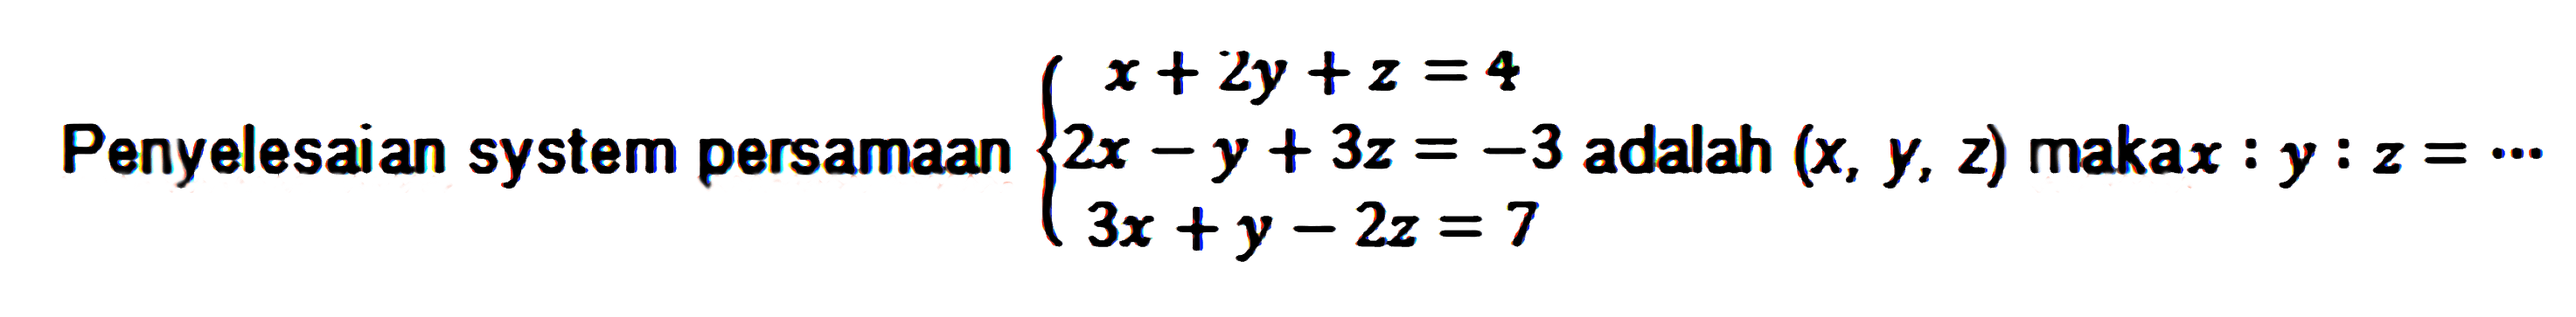 Penyelesaian system persamaan 2x - y + 3z = 3 x +2y+2 =4 3x +y - 2z = 7 adalah (x, Y, z) maka x : Y : z =